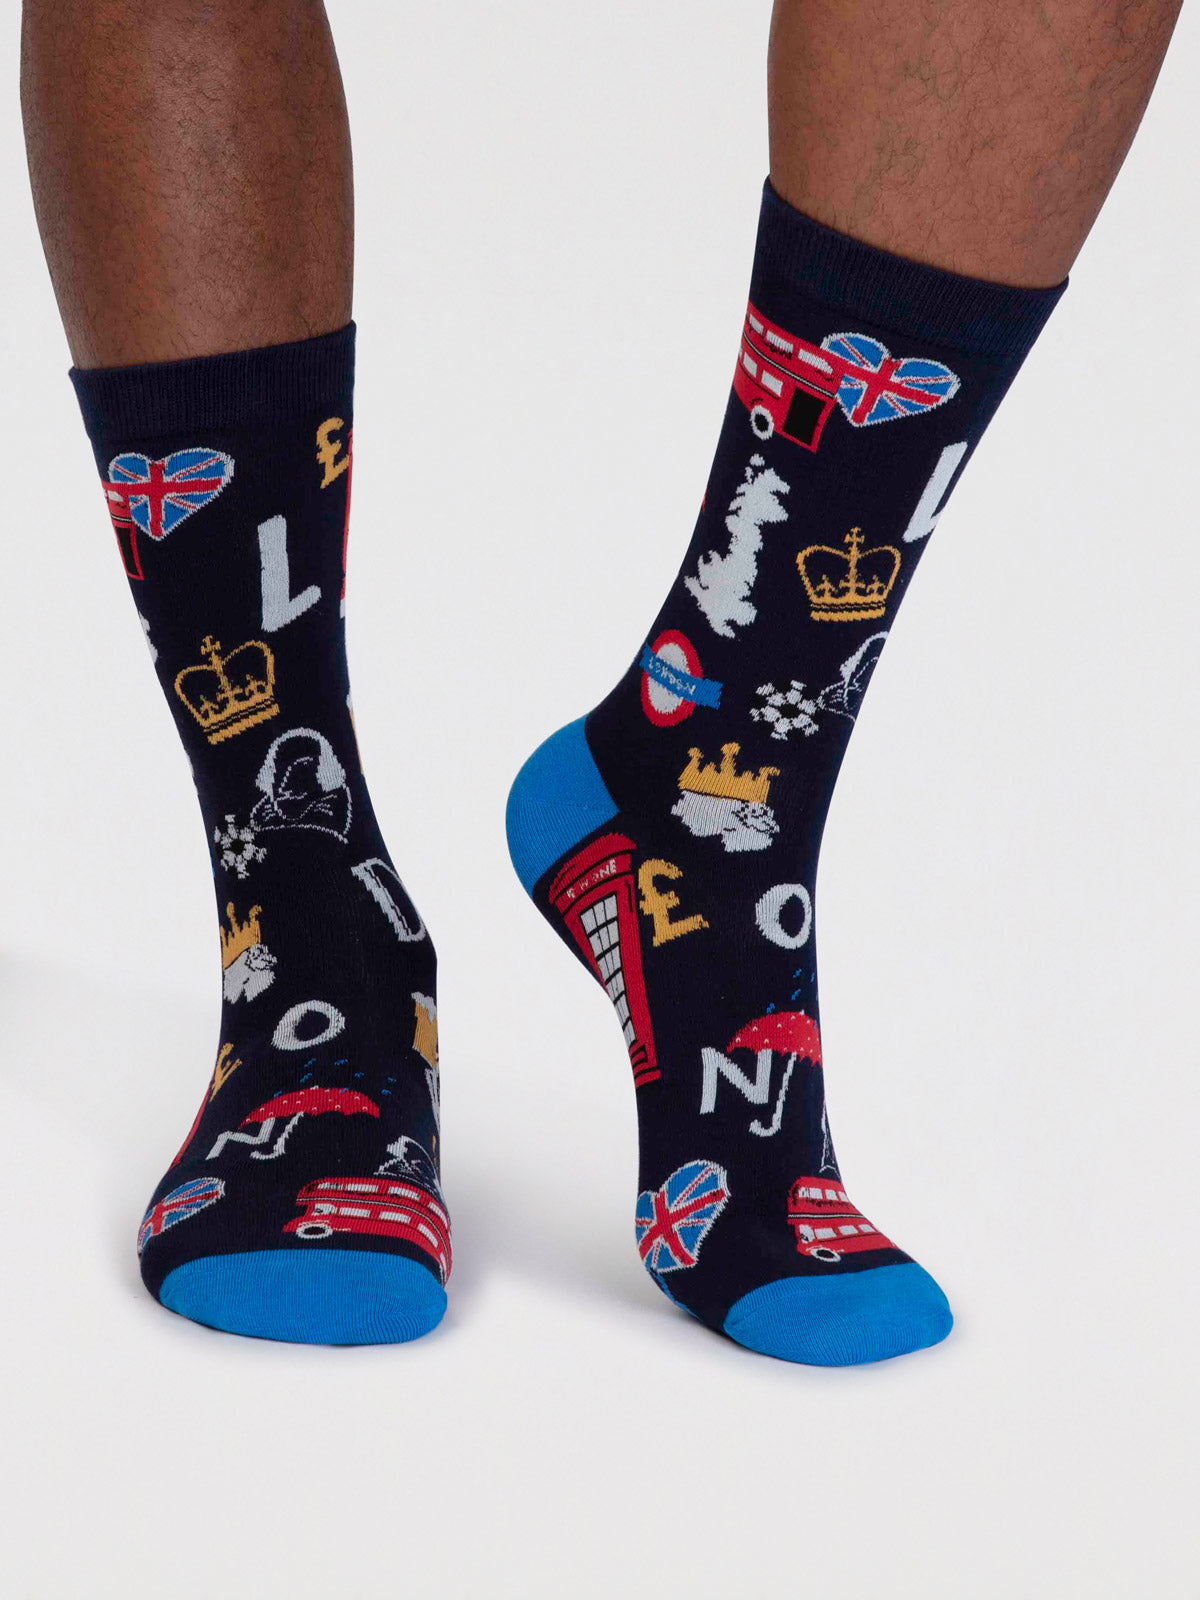 Premium Designer Socks For Men  Made with Scottish Lisle Cotton – SockSoho